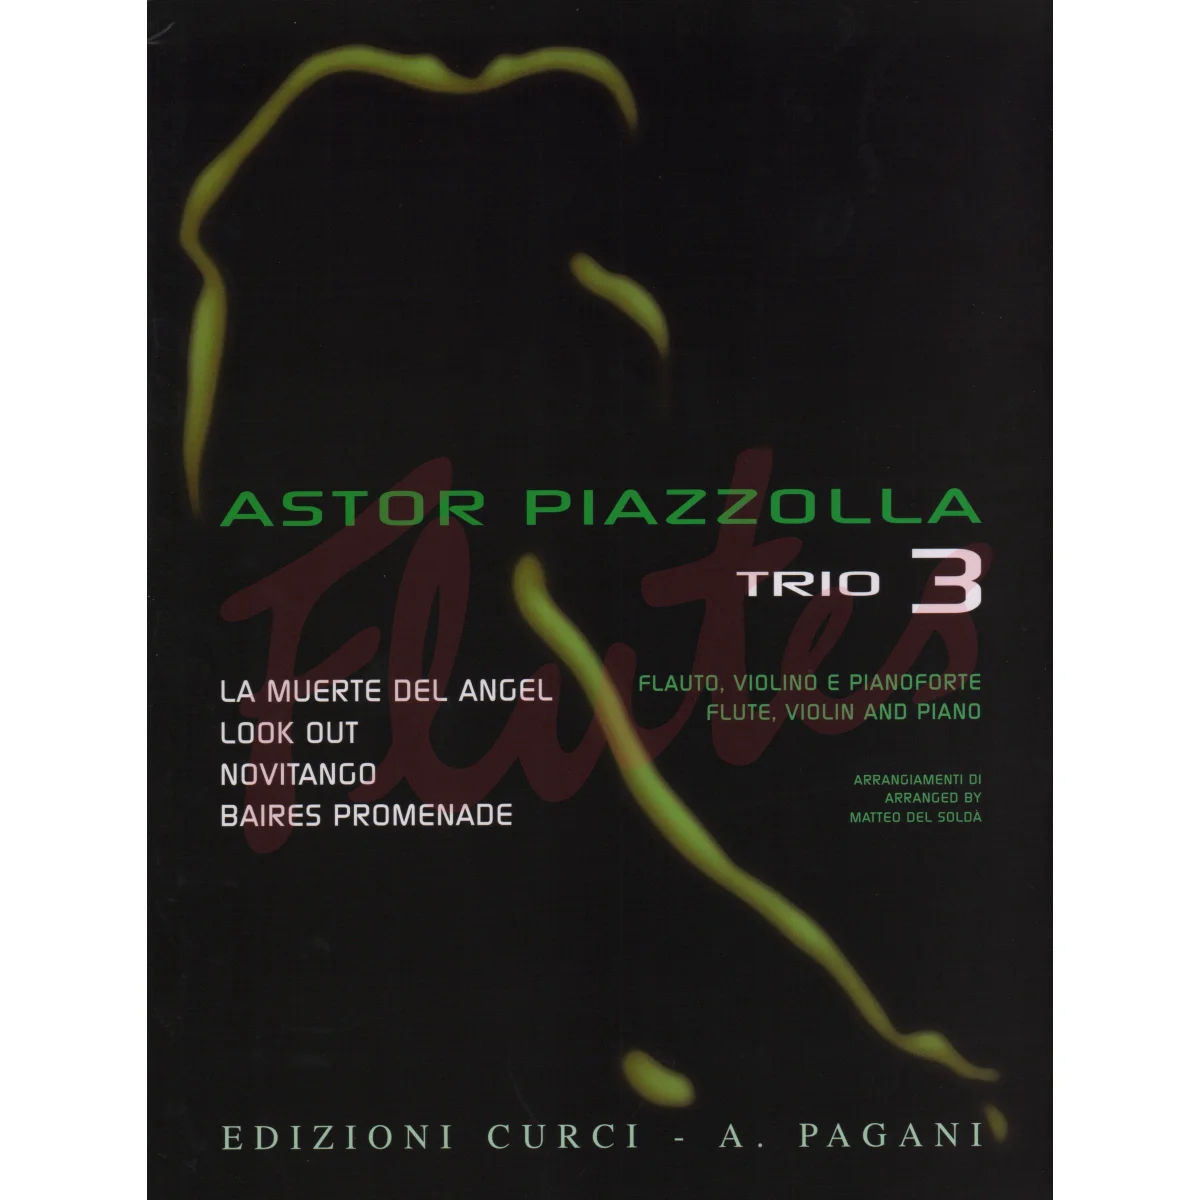 Trio 3 for Flute, Violin and Piano